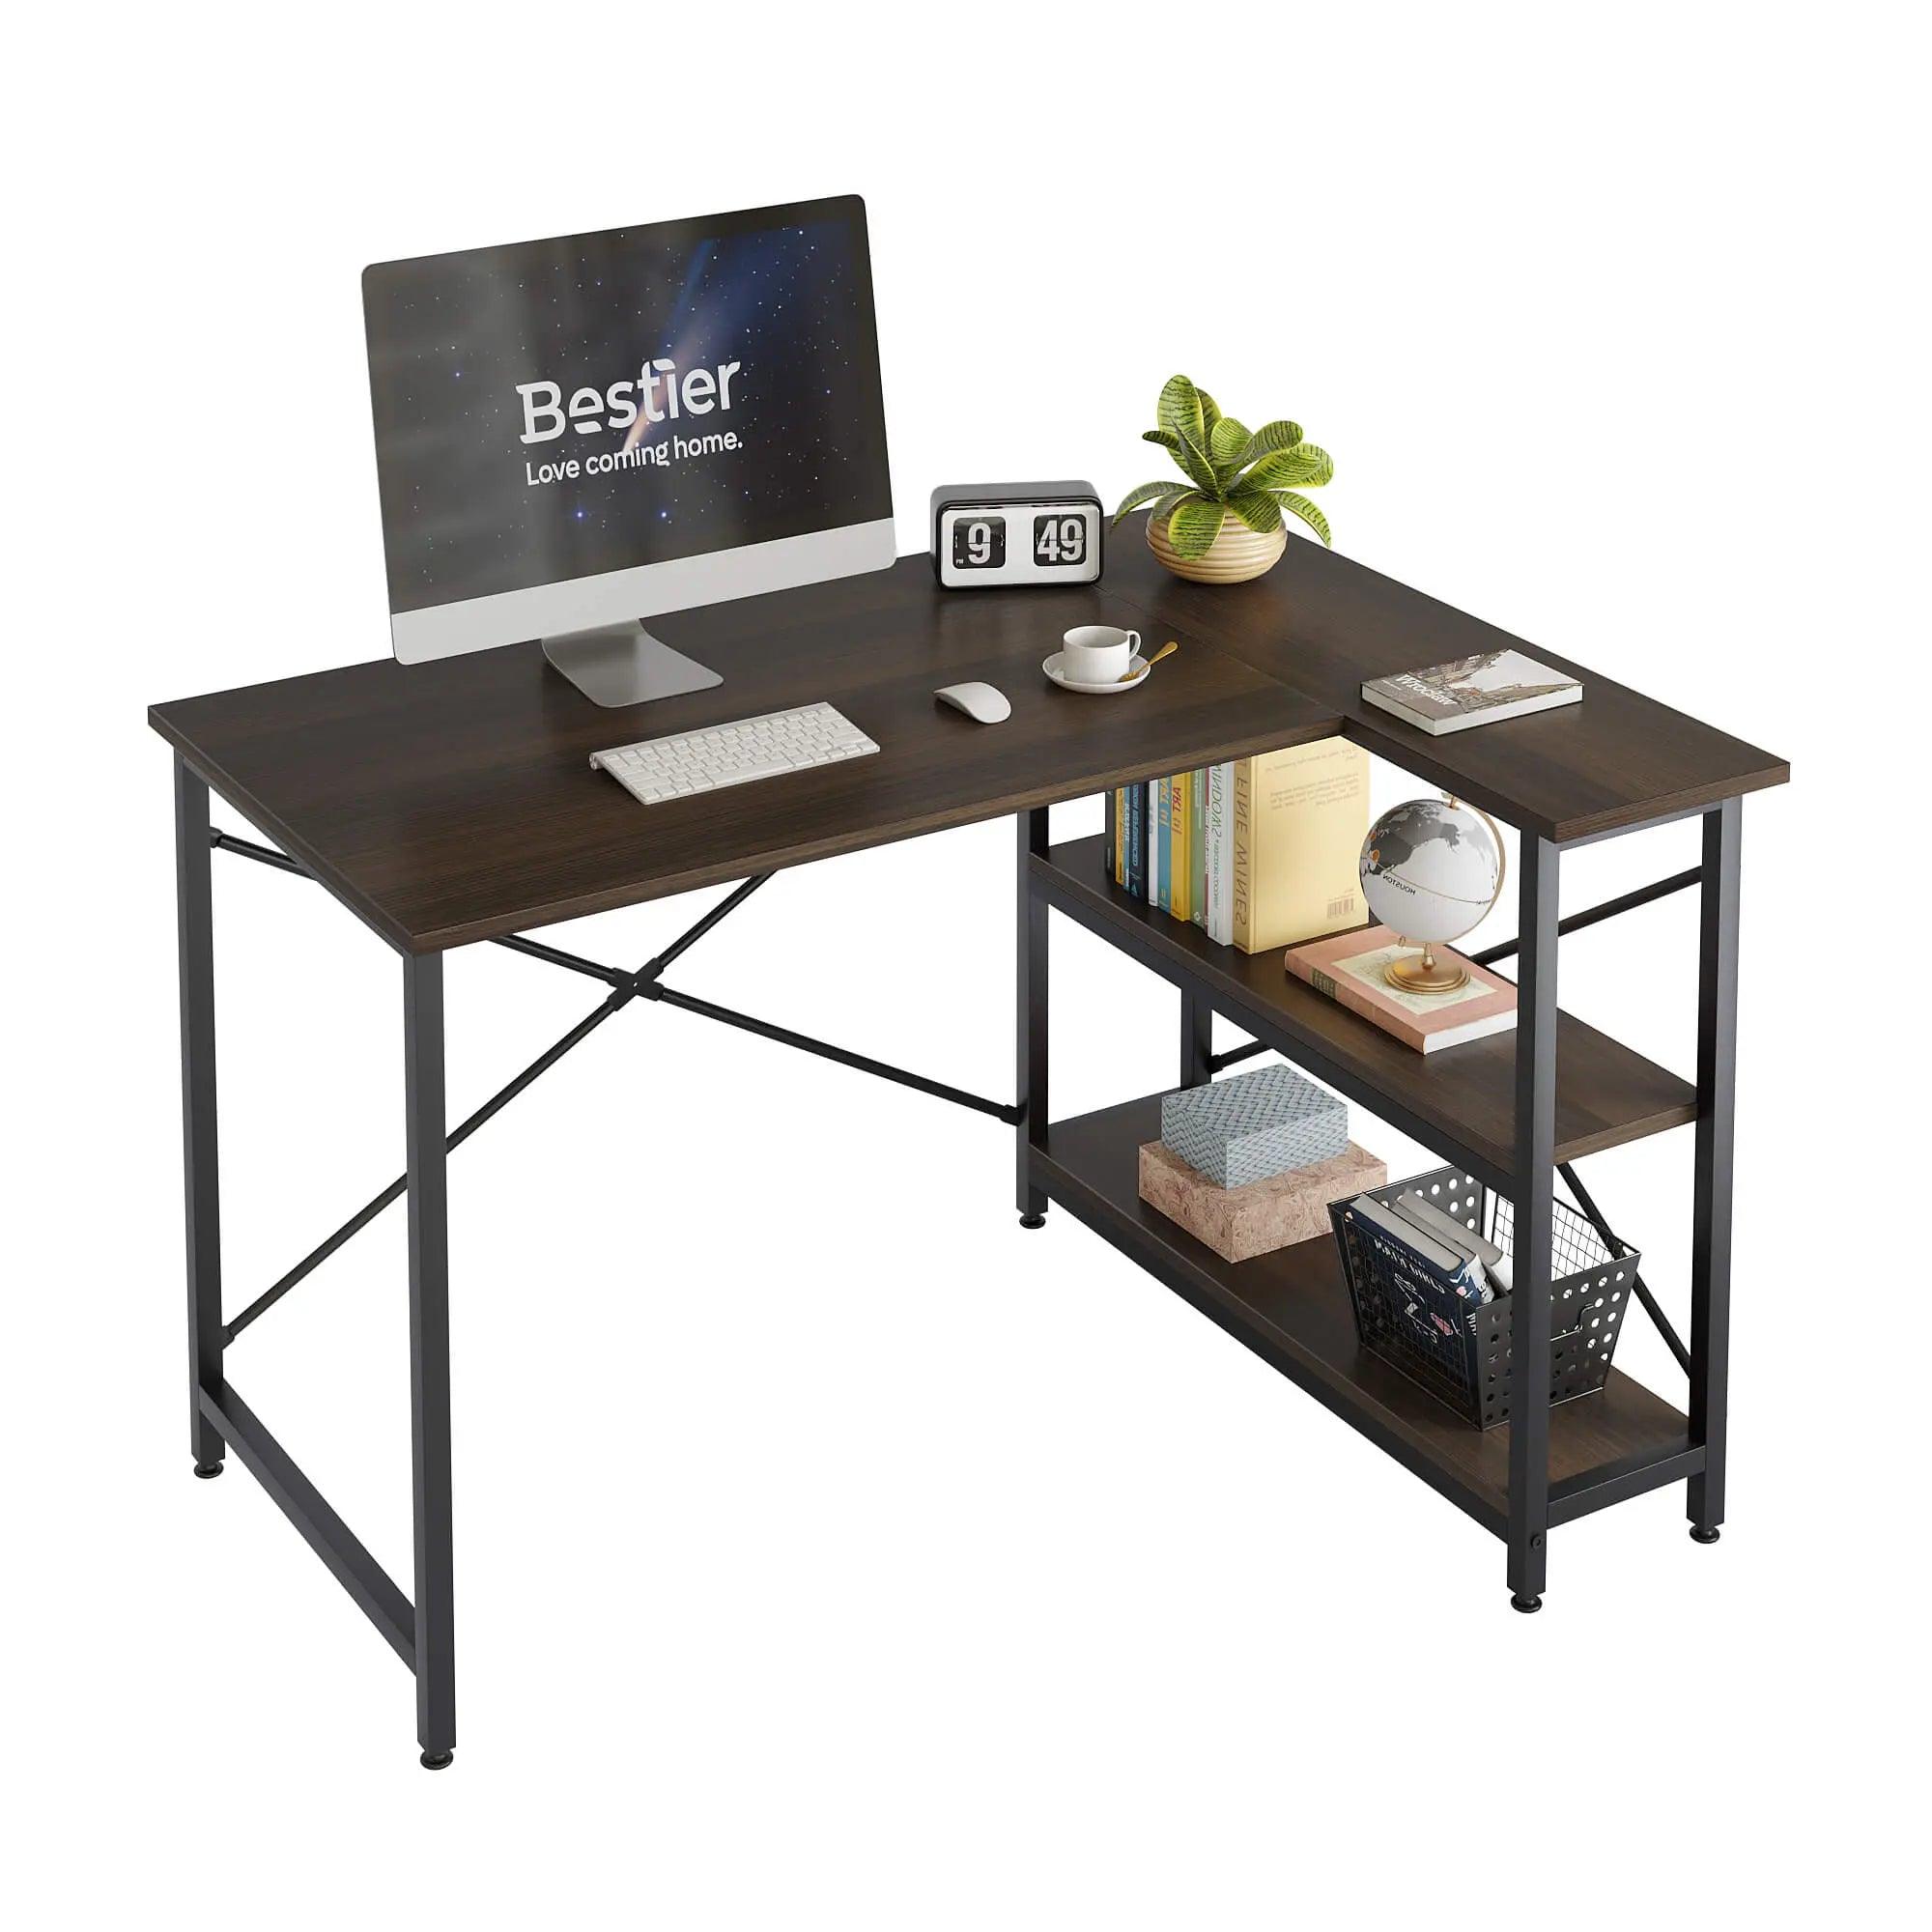 Bestier Small L shaped desk of Dark Walnut for Home Office Desk